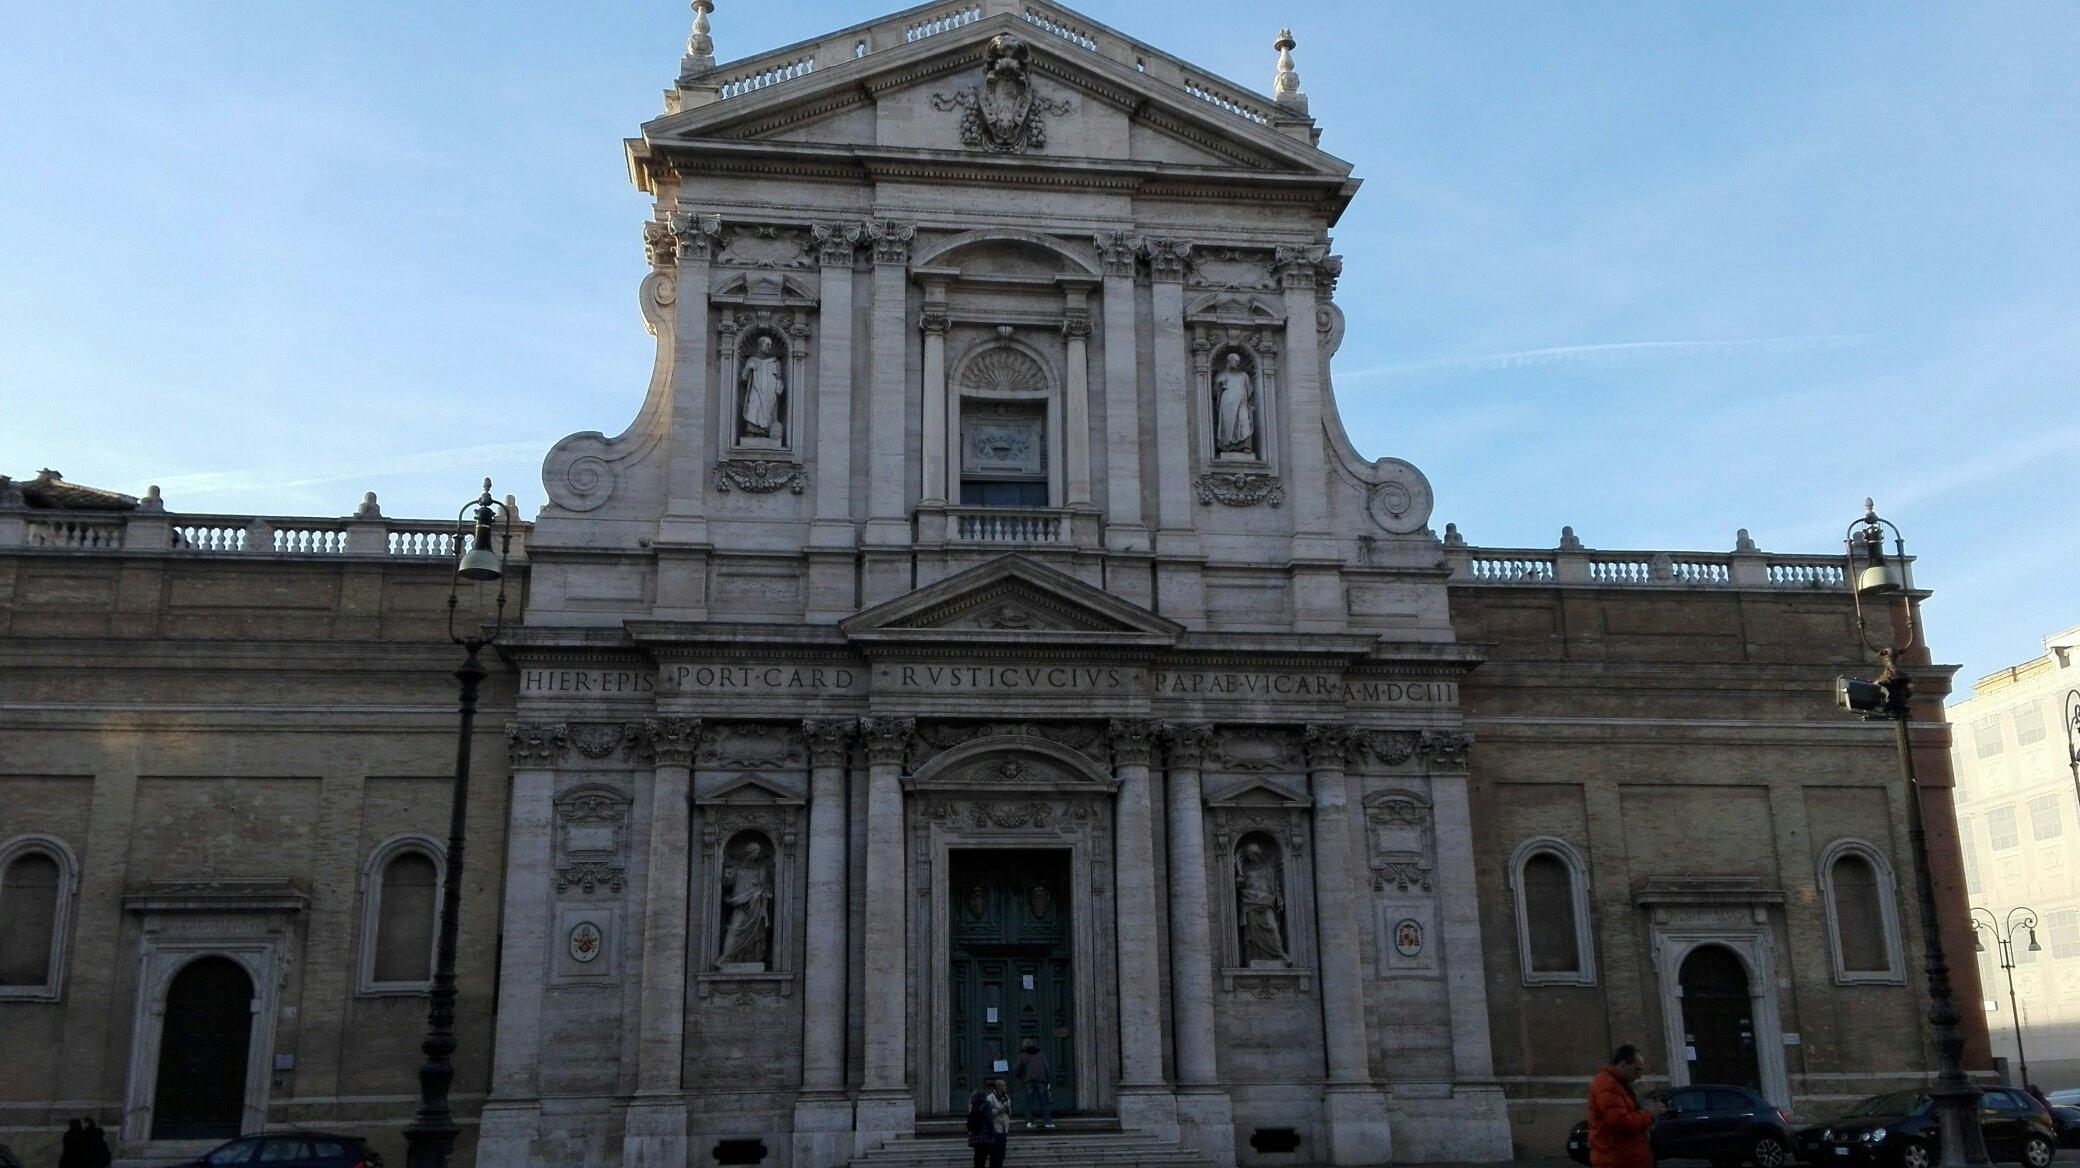 Chiesa di Santa Susanna alle Terme di Diocleziano